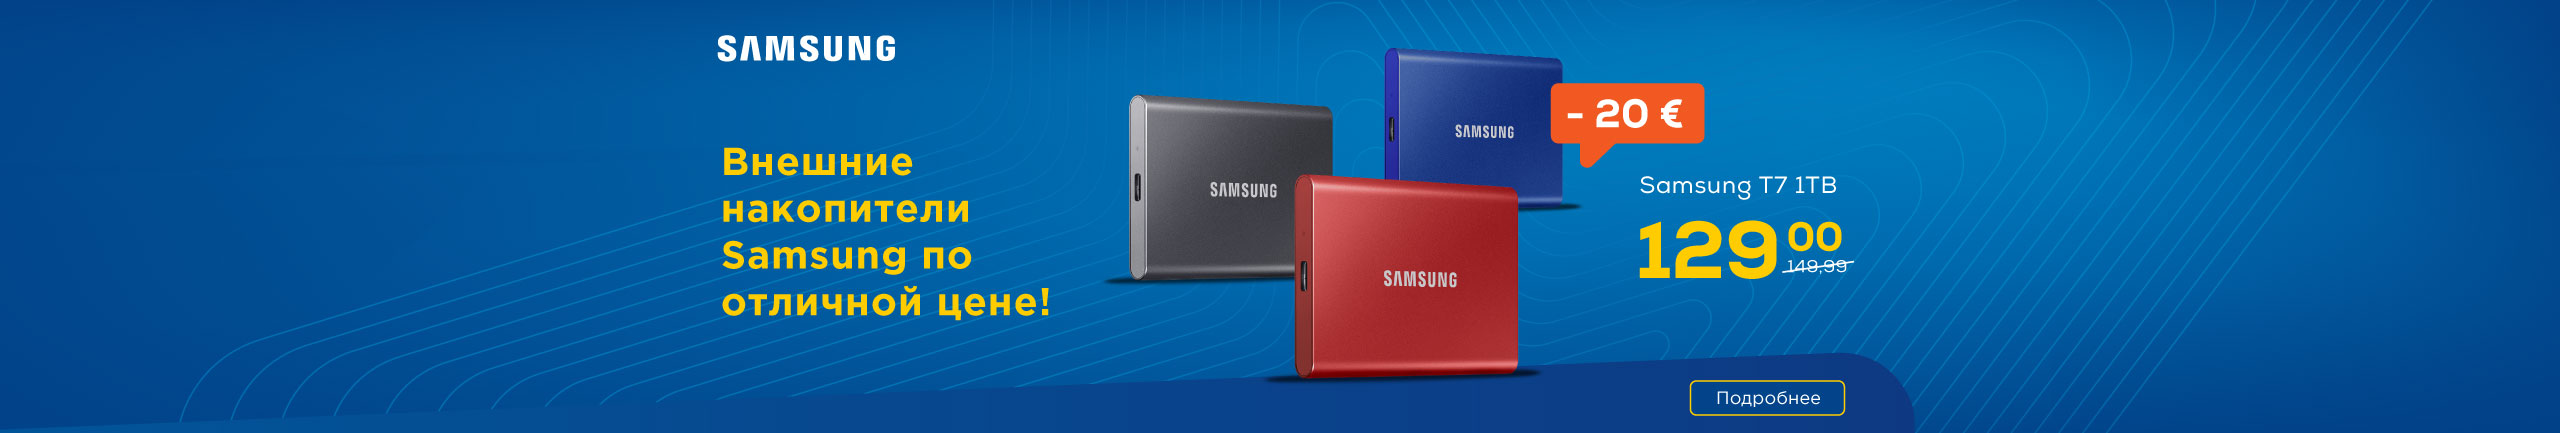 Внешние накопители Samsung по отличной цене!